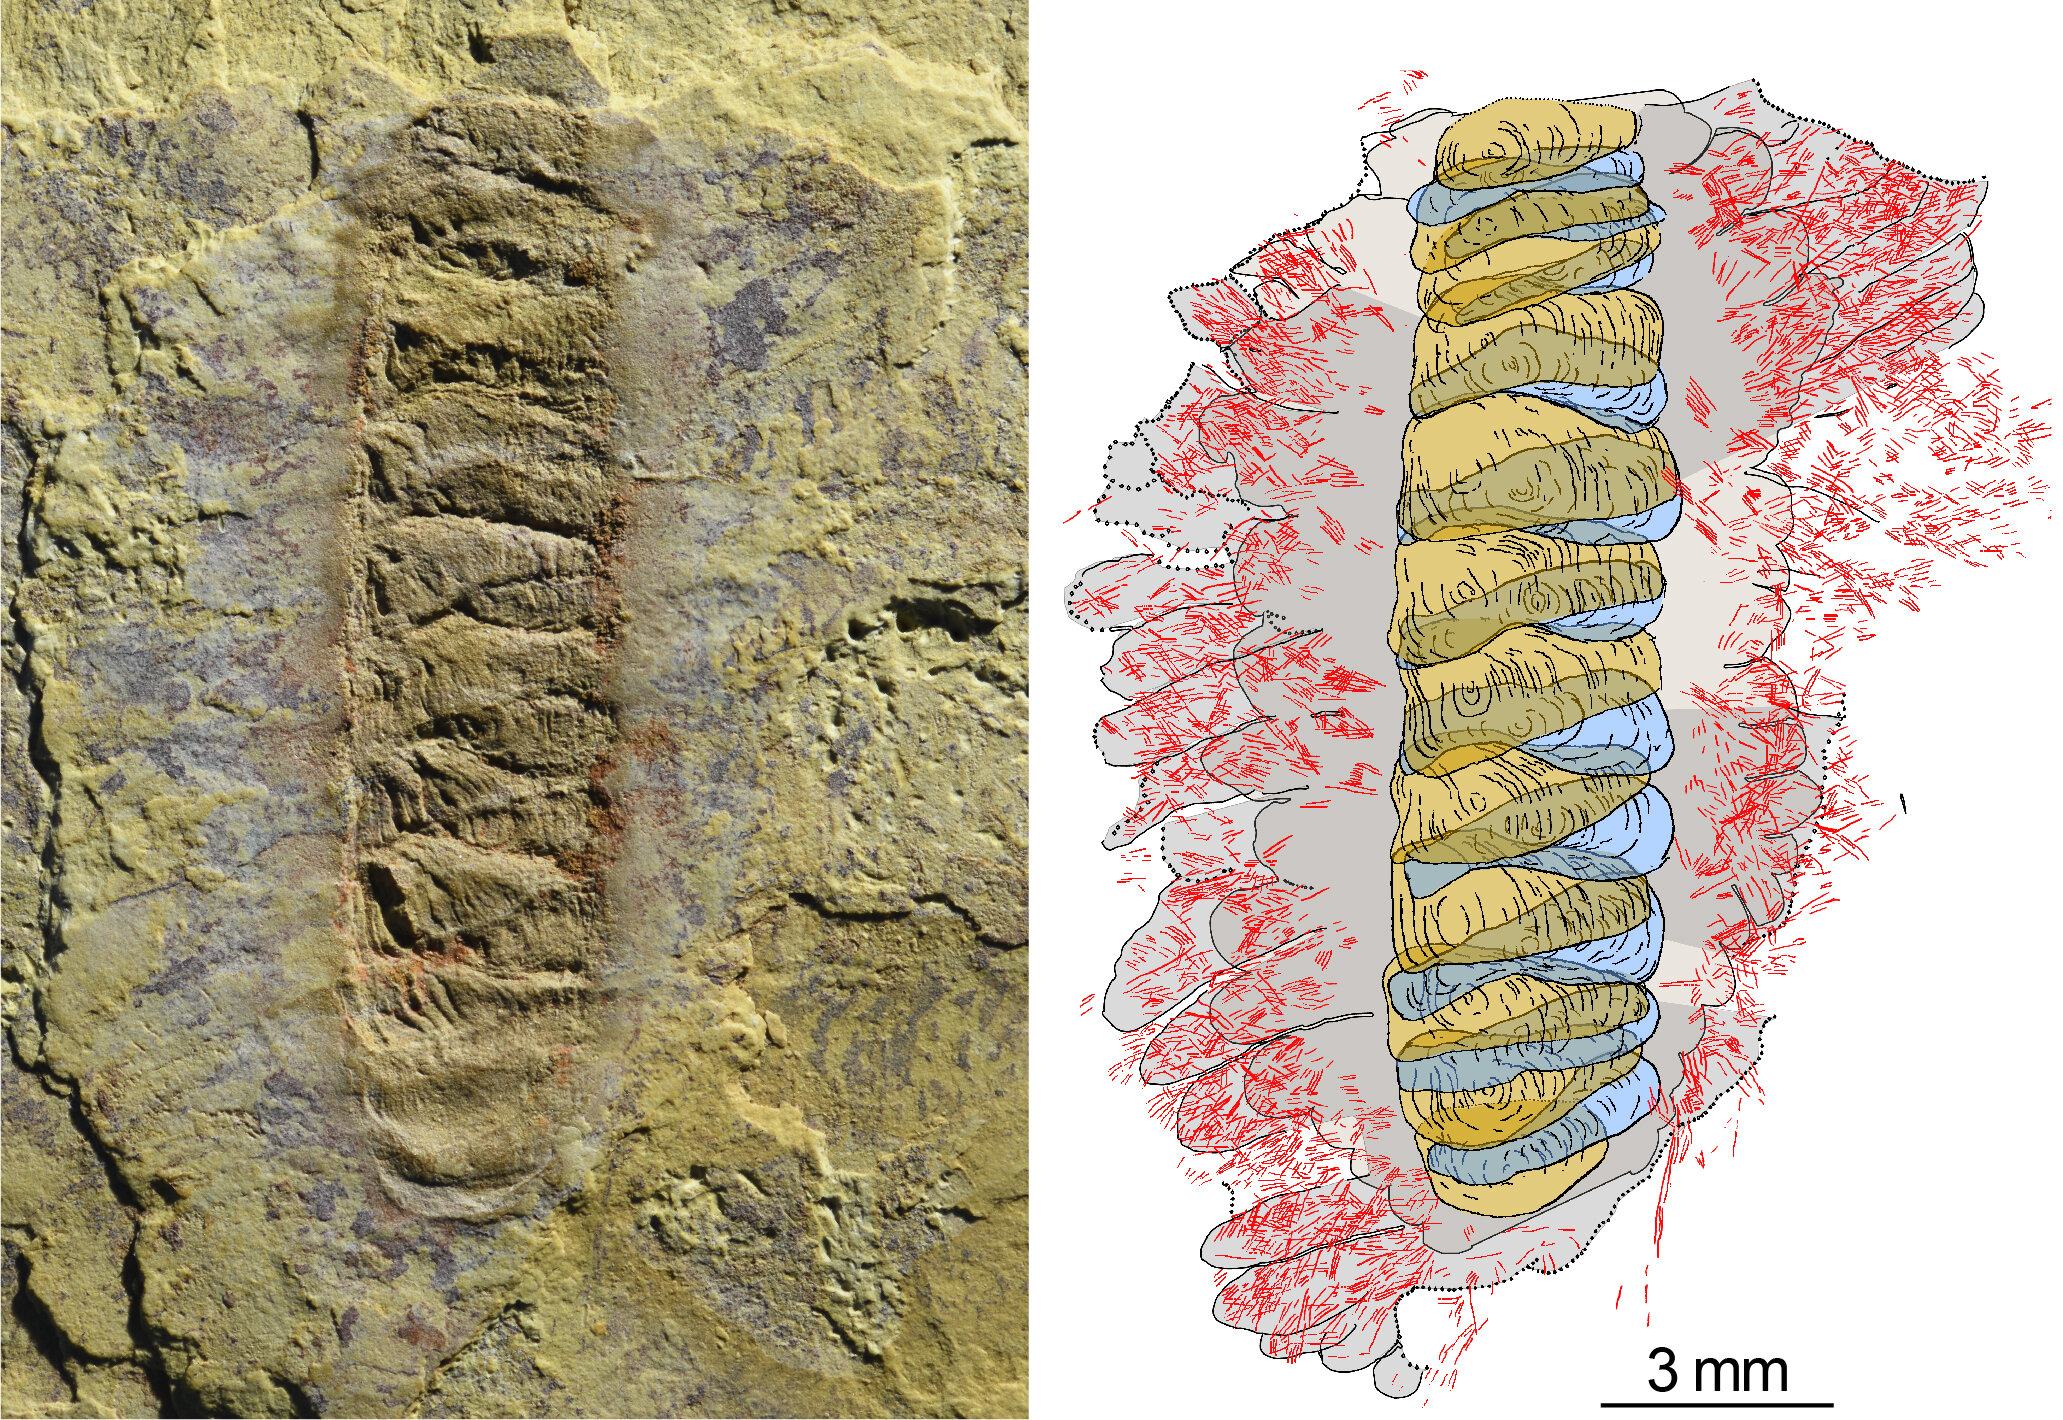 El fósil Wufengella y un dibujo que describe los principales componentes del organismo. Crédito: Jakob Vinther y Luke Parry